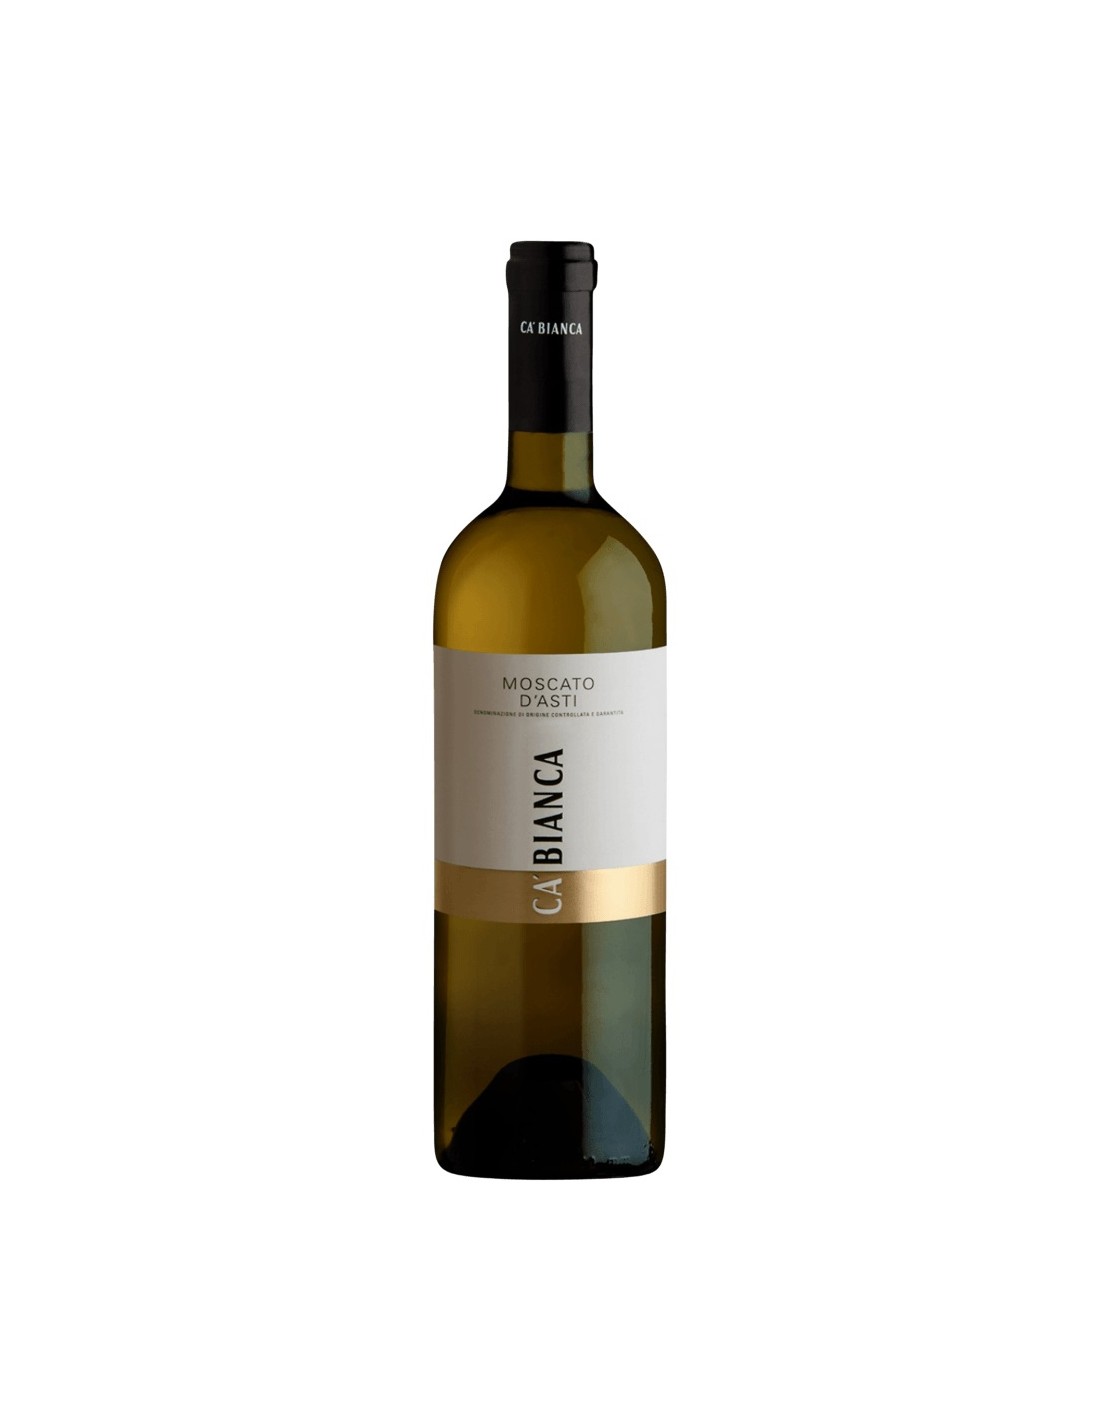 Vin alb demidulce, Moscato, Tenimenti Ca’ Bianca d’Asti, 0.75L, 5% alc., Italia alcooldiscount.ro